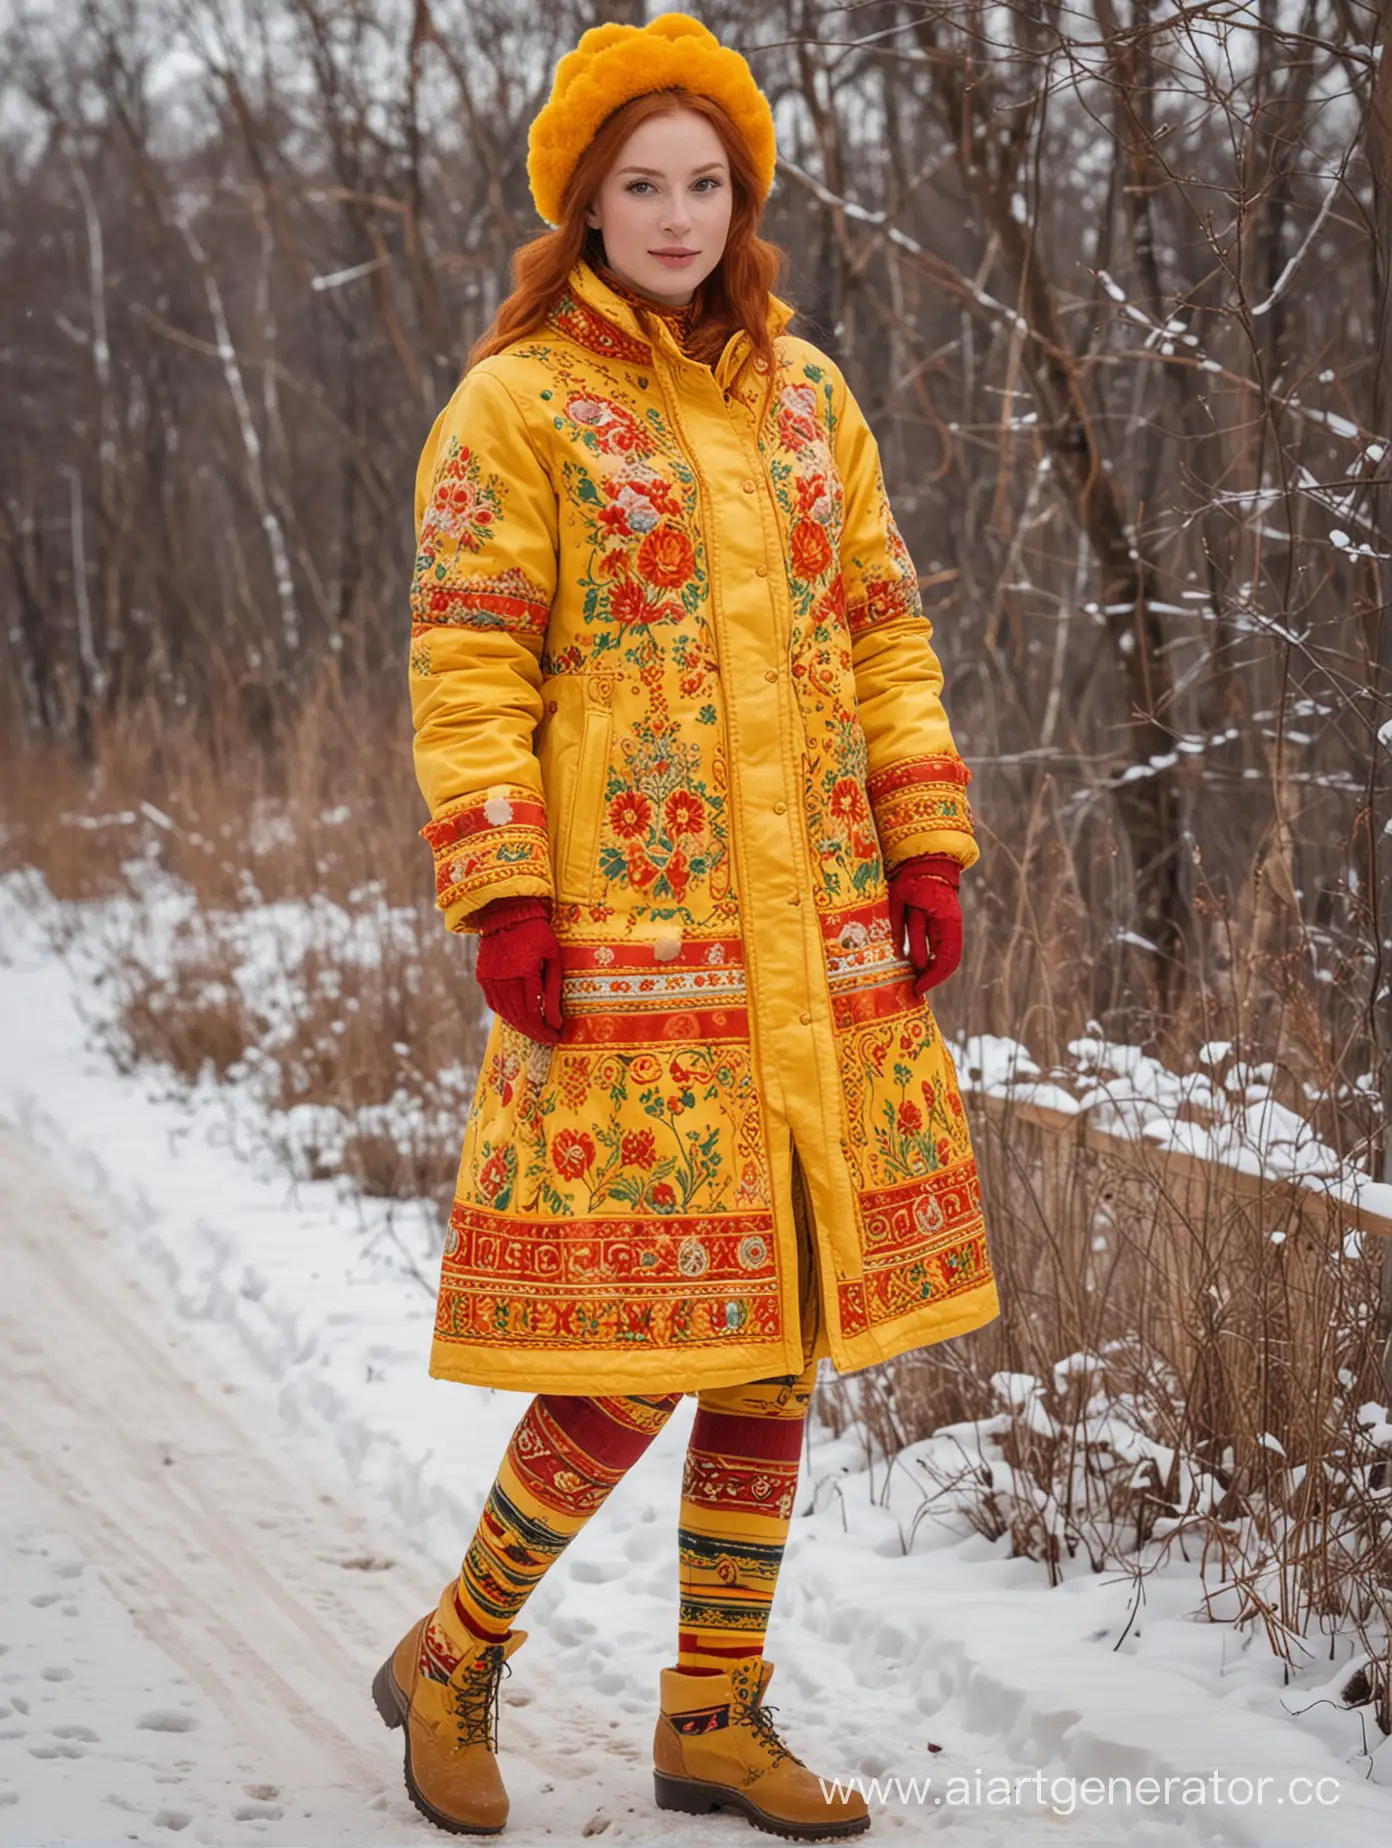 Зимой рыжая русская царевна носит красно-жёлто-оранжевую куртку с хохломской росписью, жёлтые перчатки и шапку с помпоном и этикеткой. На ногах штаны с красной и жёлтой полосами.